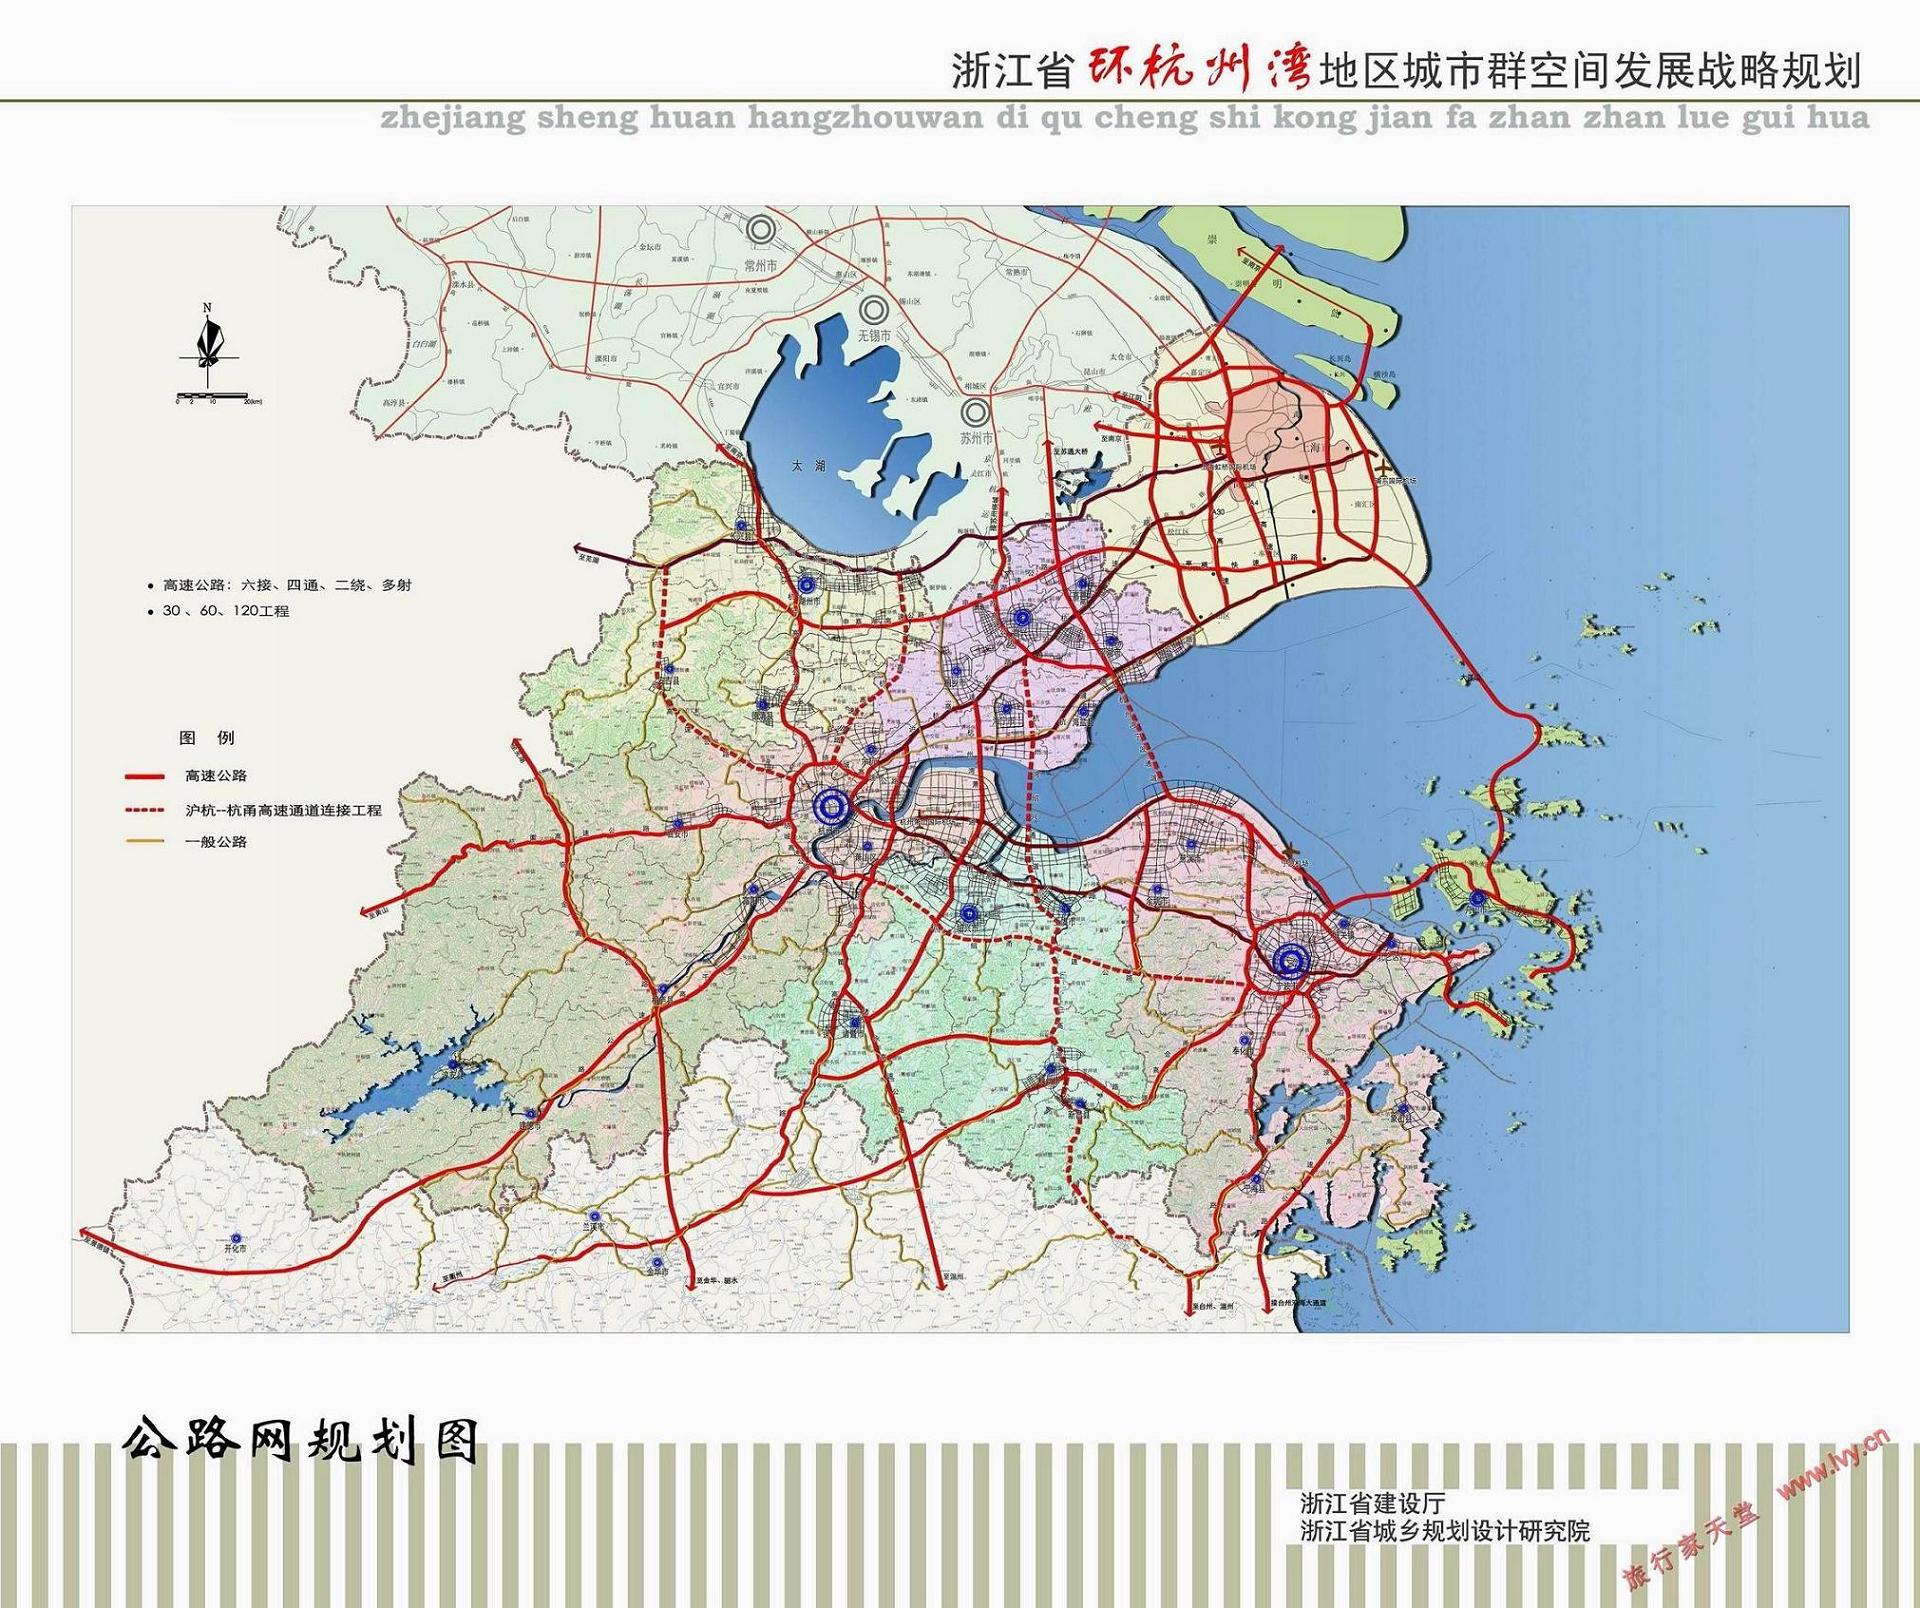 浙江省钱塘江两岸交通规划图,有规划新建的杭绍甬高速公路|第四城市·城建